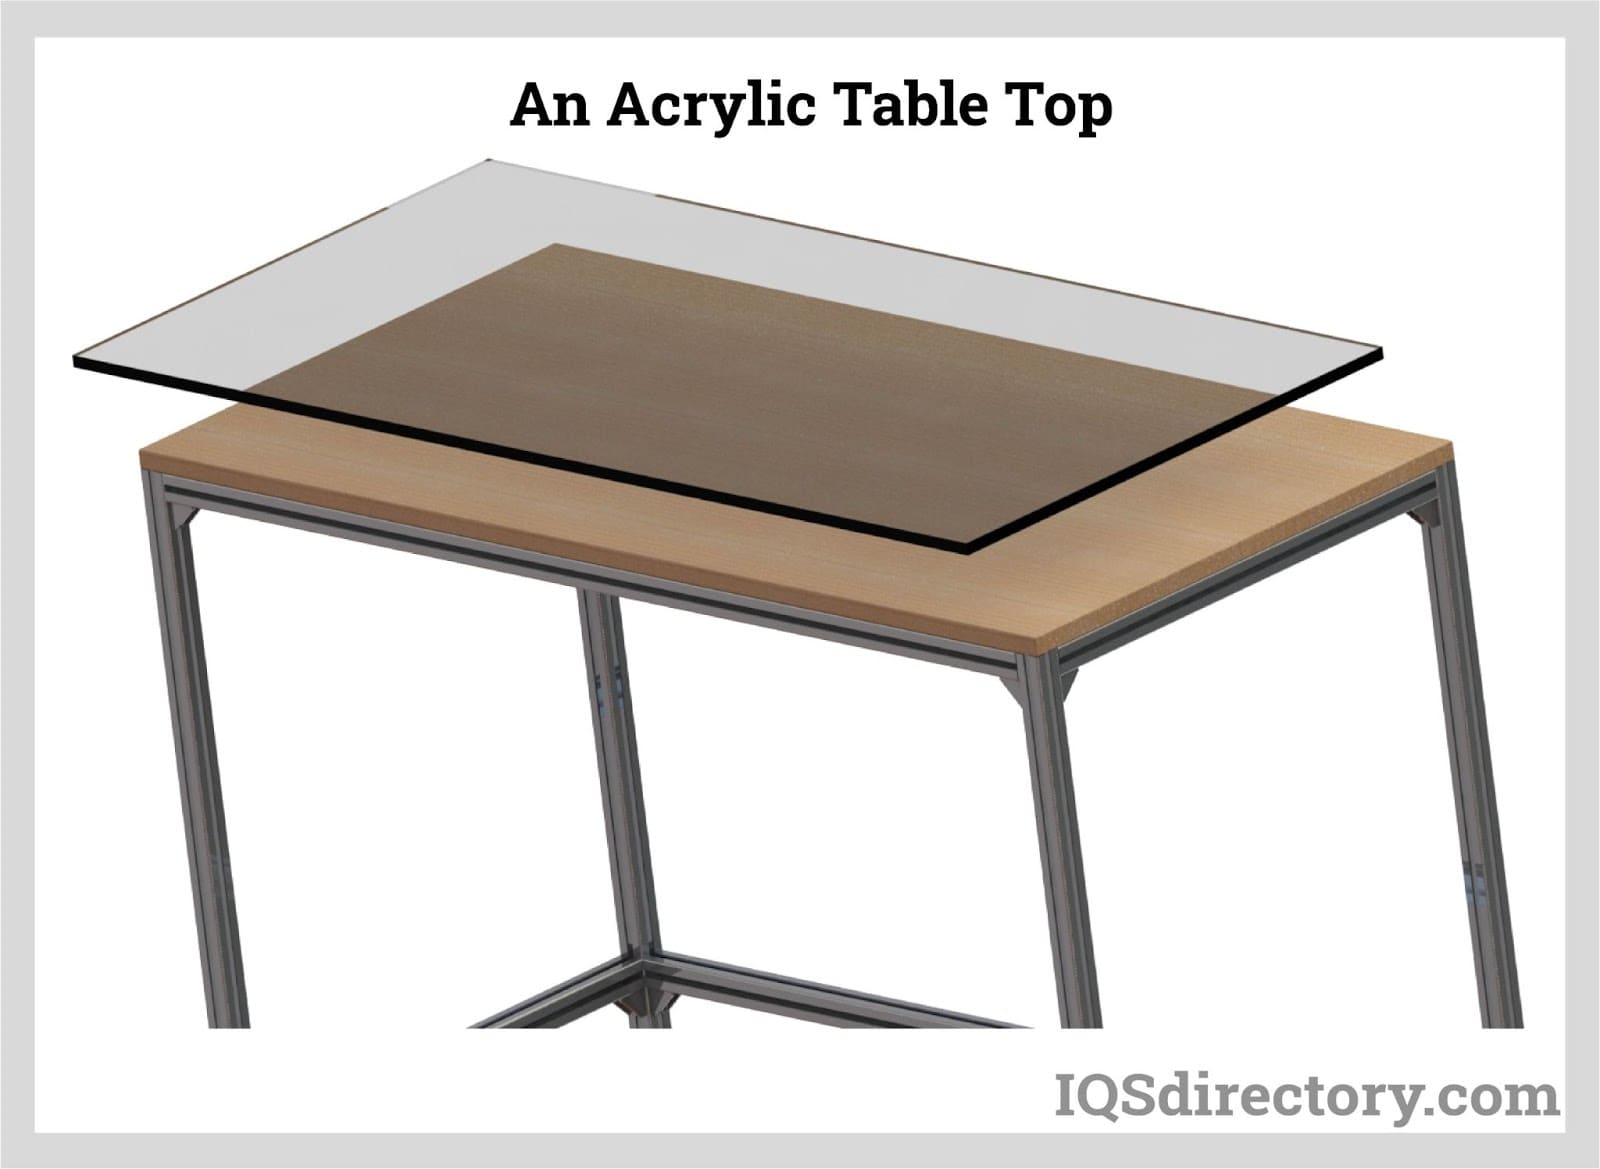 An Acrylic Table Top